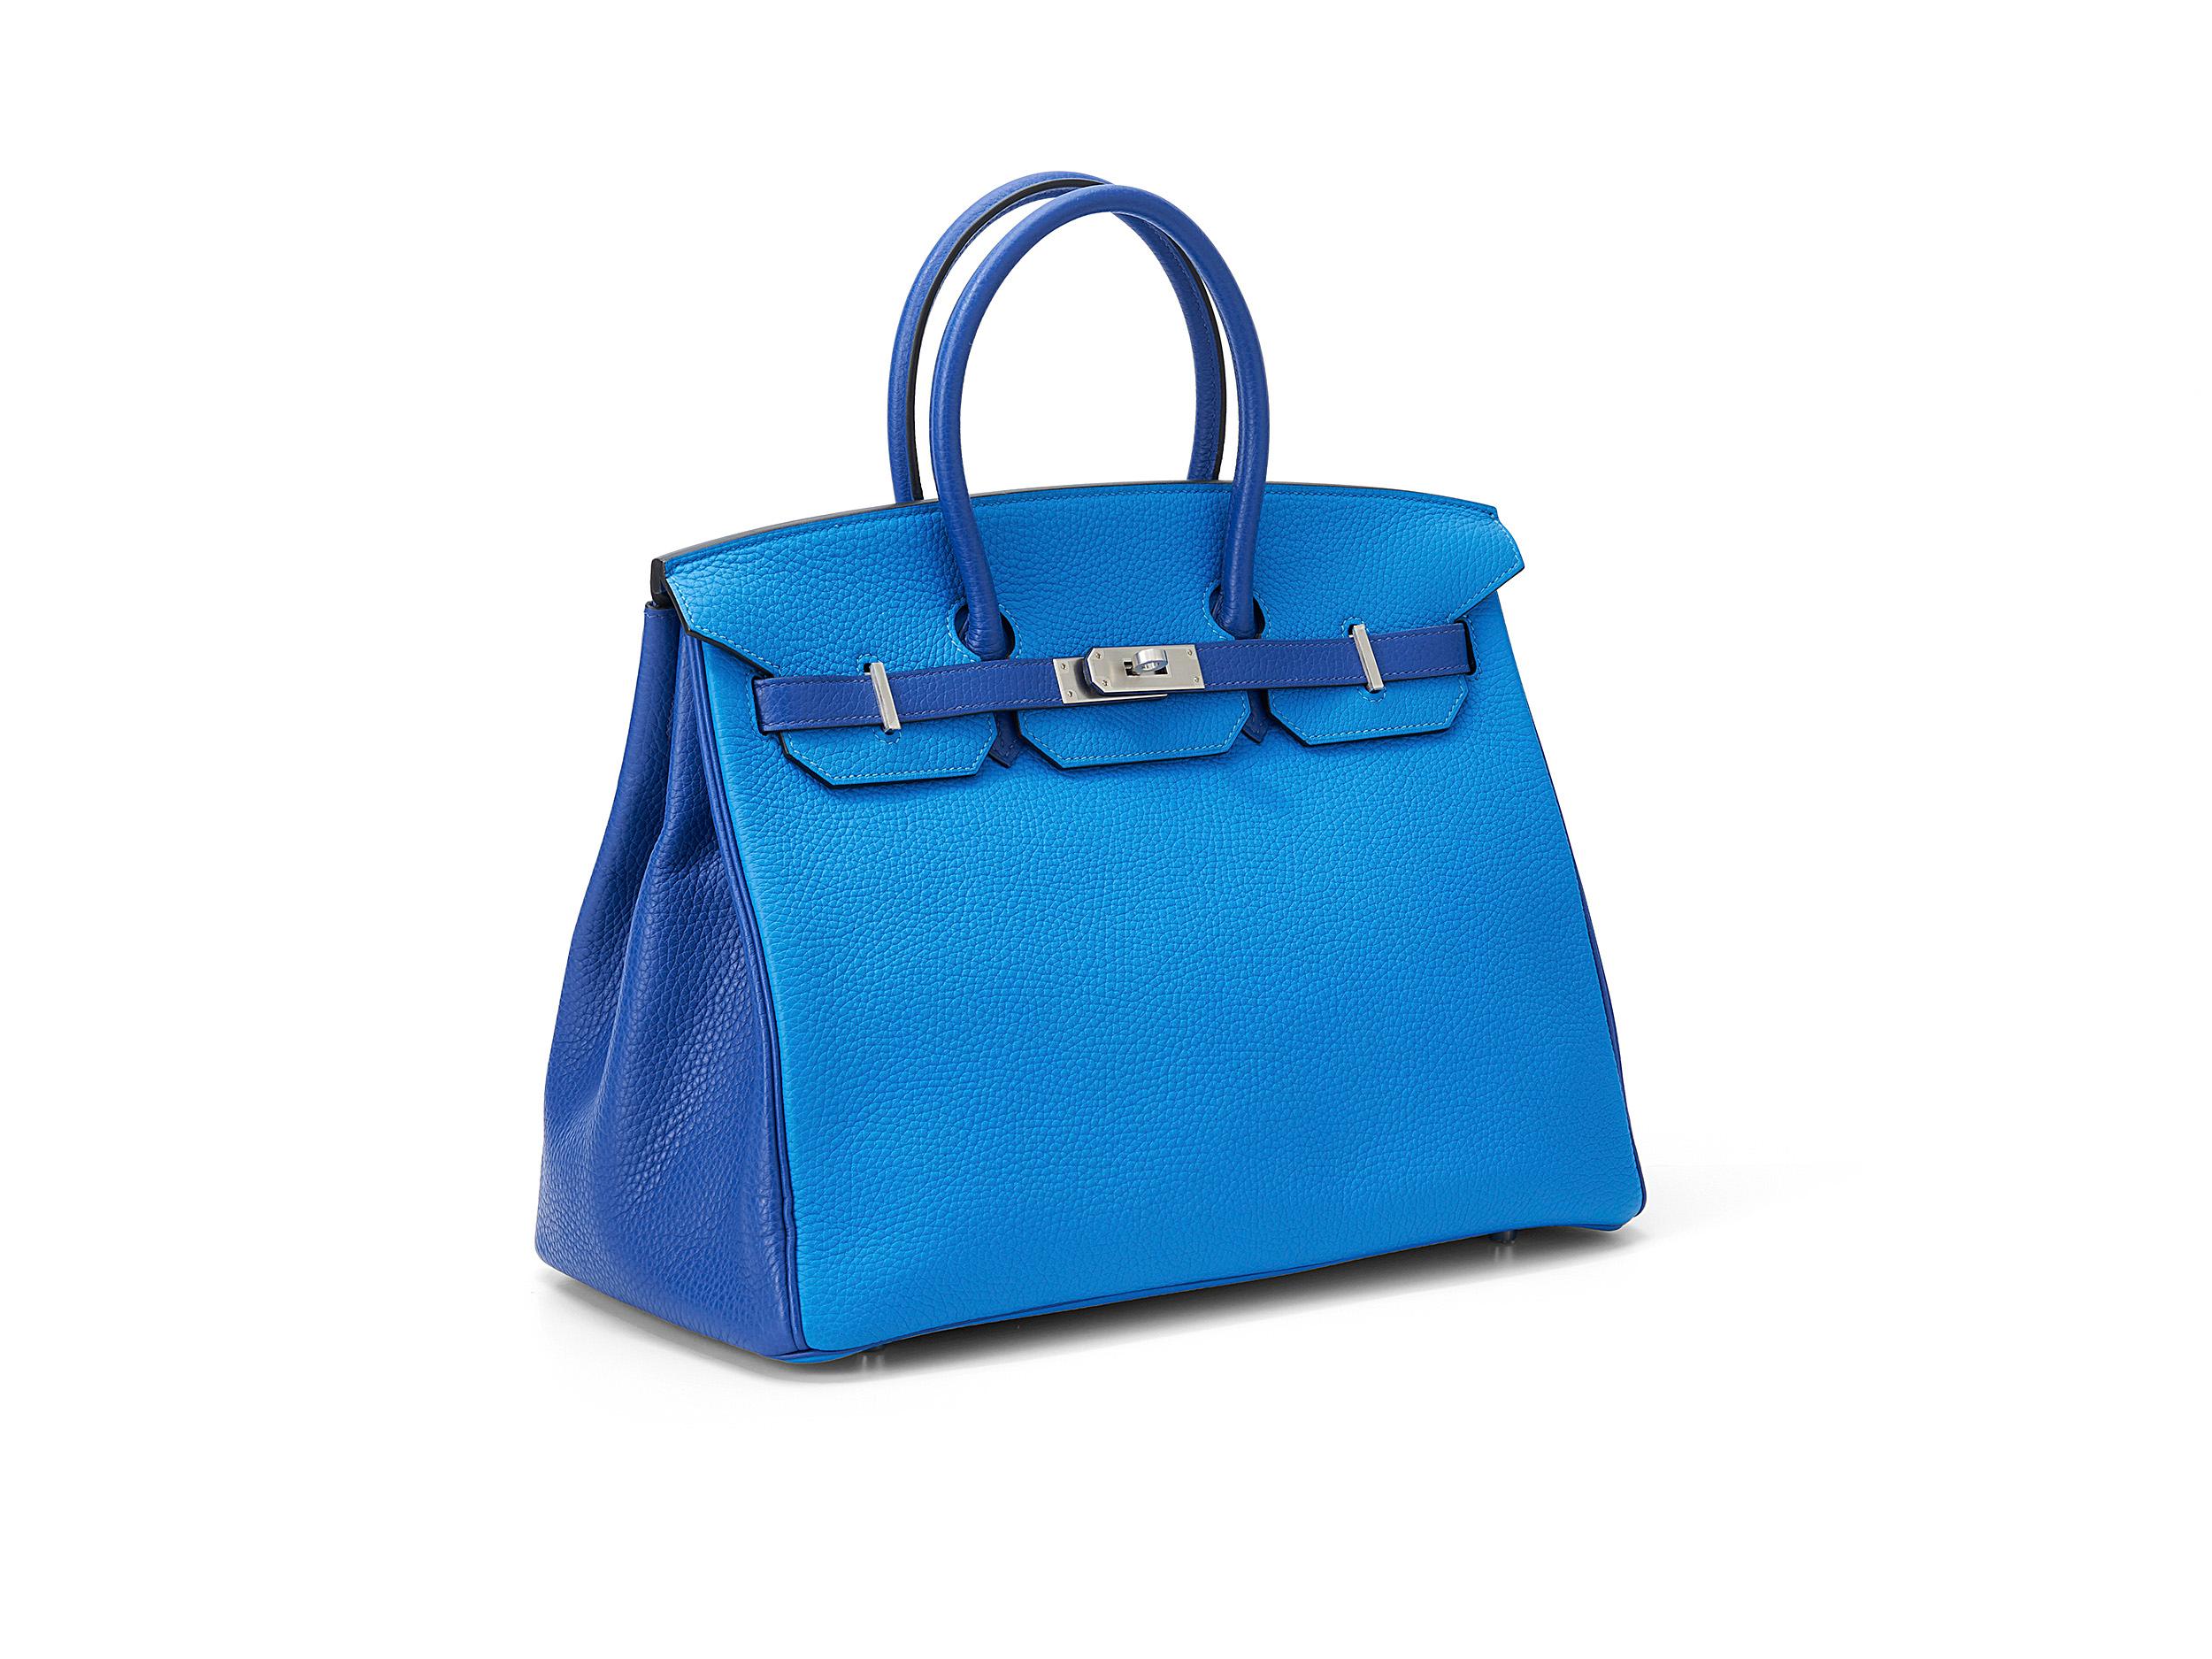 Birkin HSS 35 d'Hermès en cuir bleu électrique/zelige et togo, avec accessoires en palladium. Le sac est en très bon état, avec seulement une légère marque comme sur la photo et est livré avec la boîte Hermès, le sac à poussière Hermès, la clochette